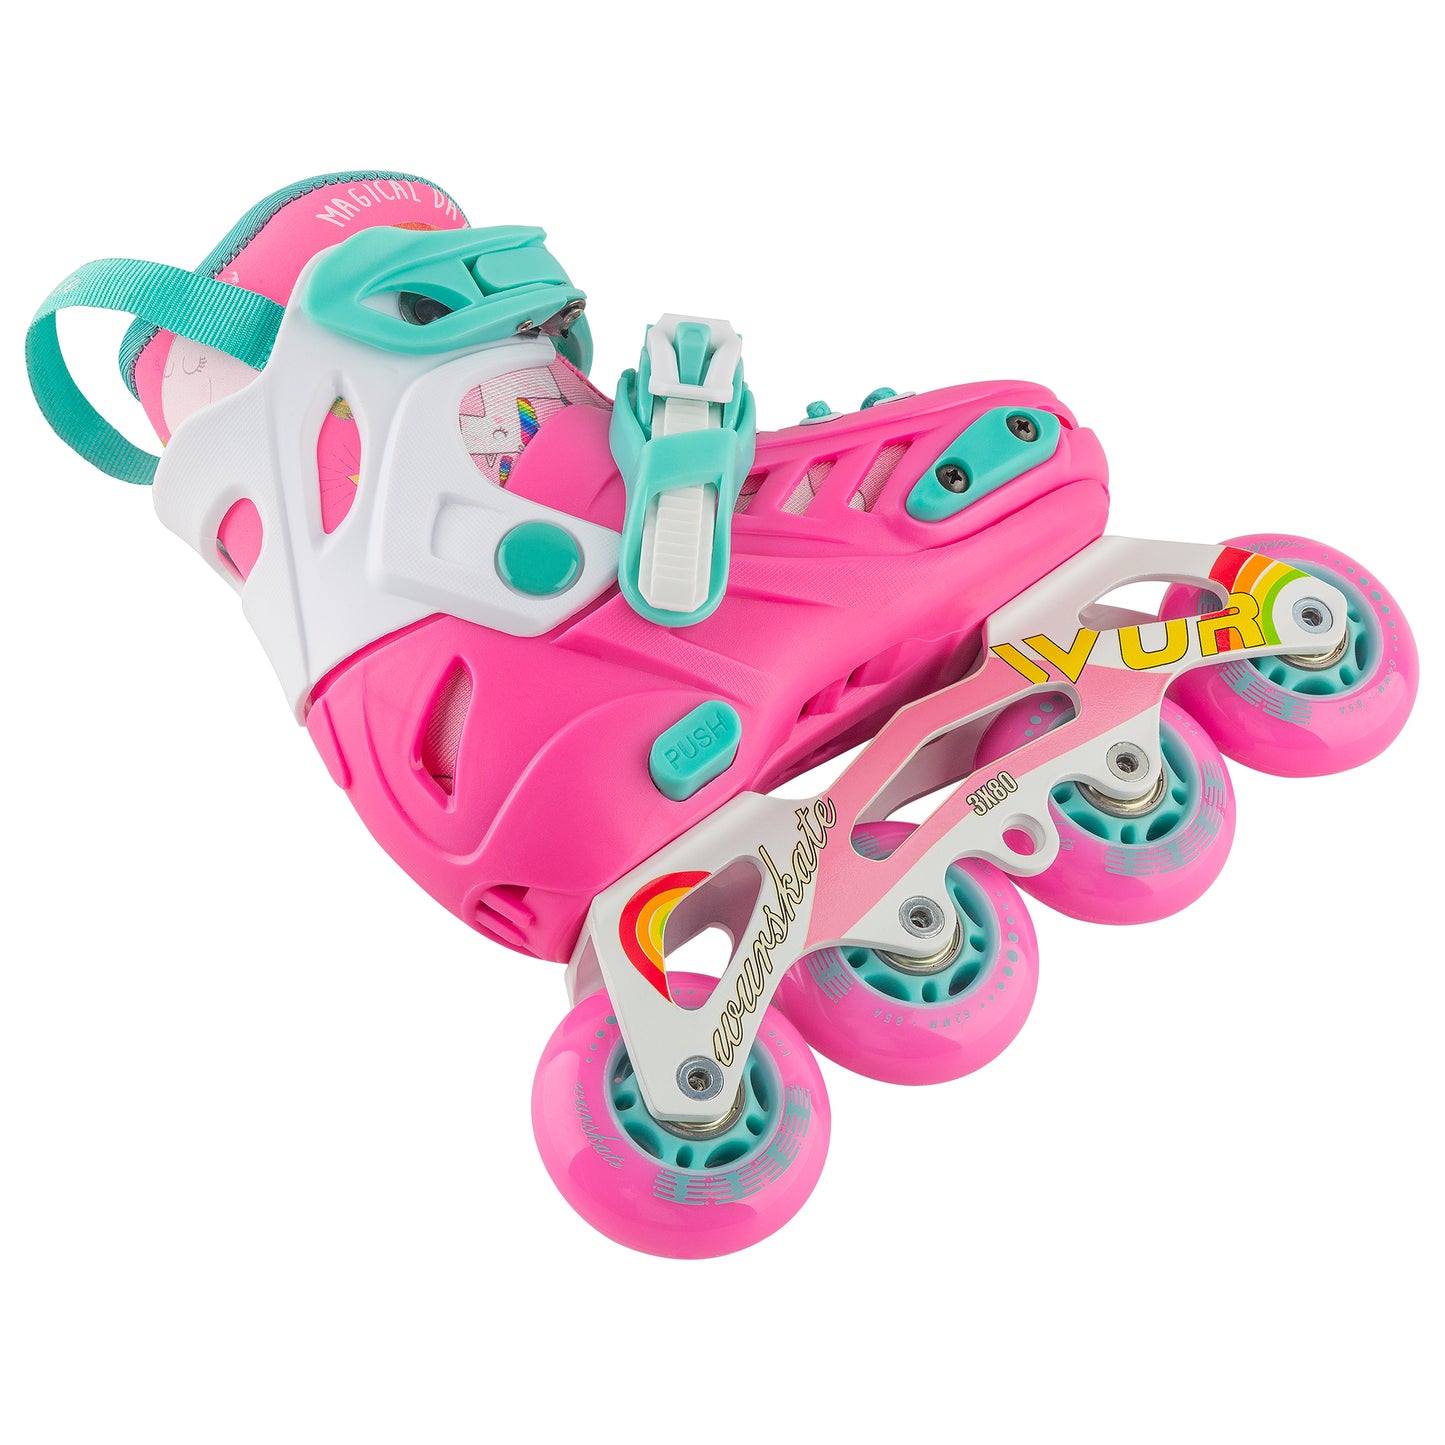 D102 Adjustable skate pink